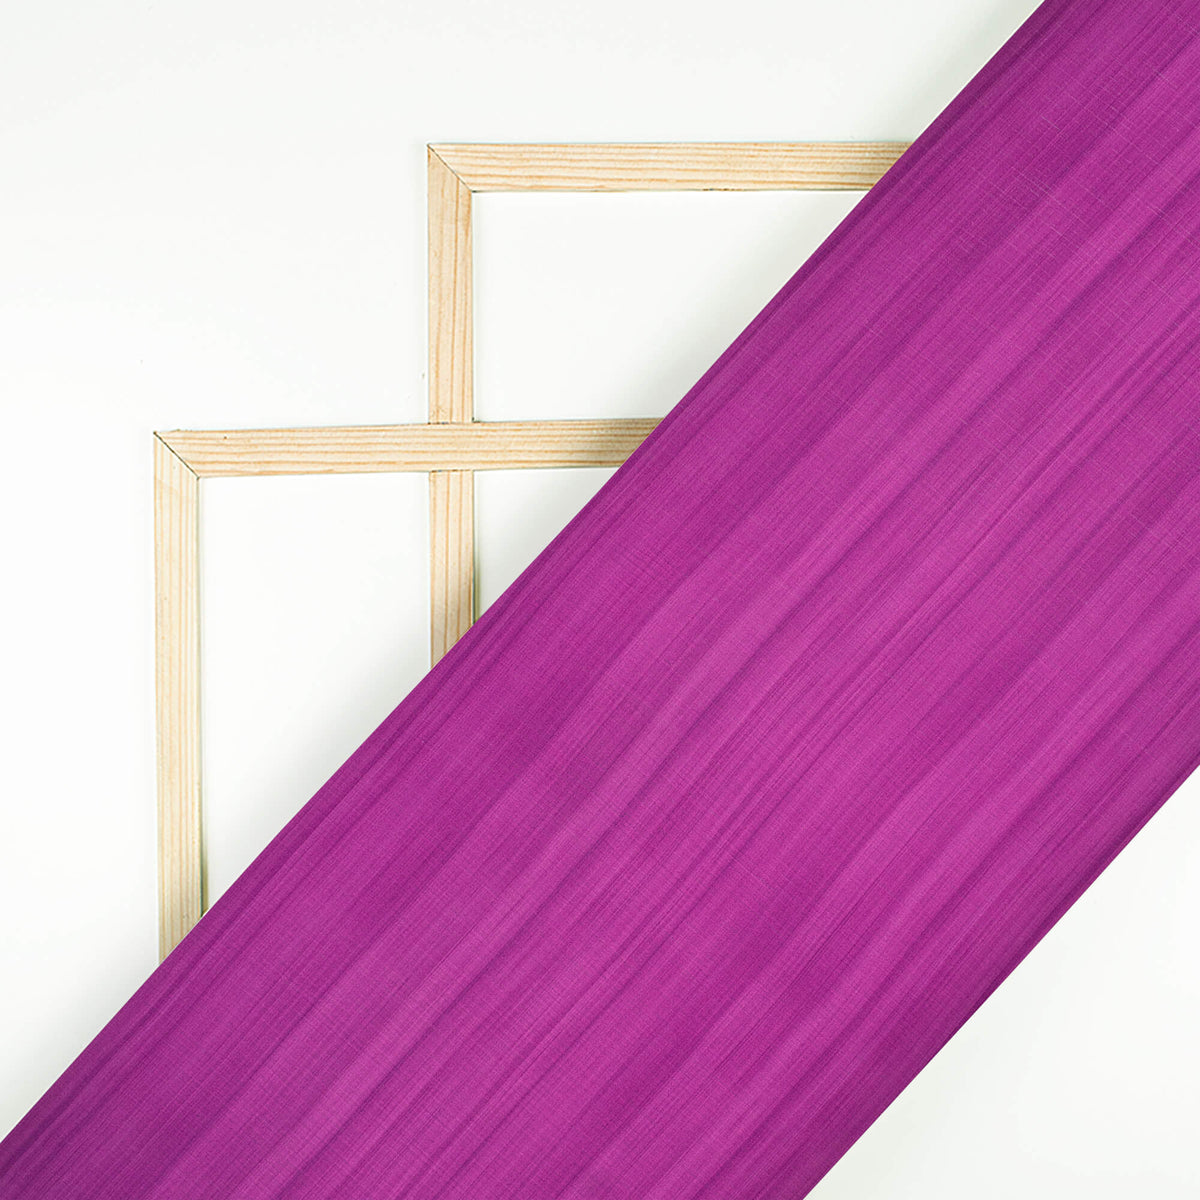 Purple Texture Pattern Digital Print Chiffon Satin Fabric